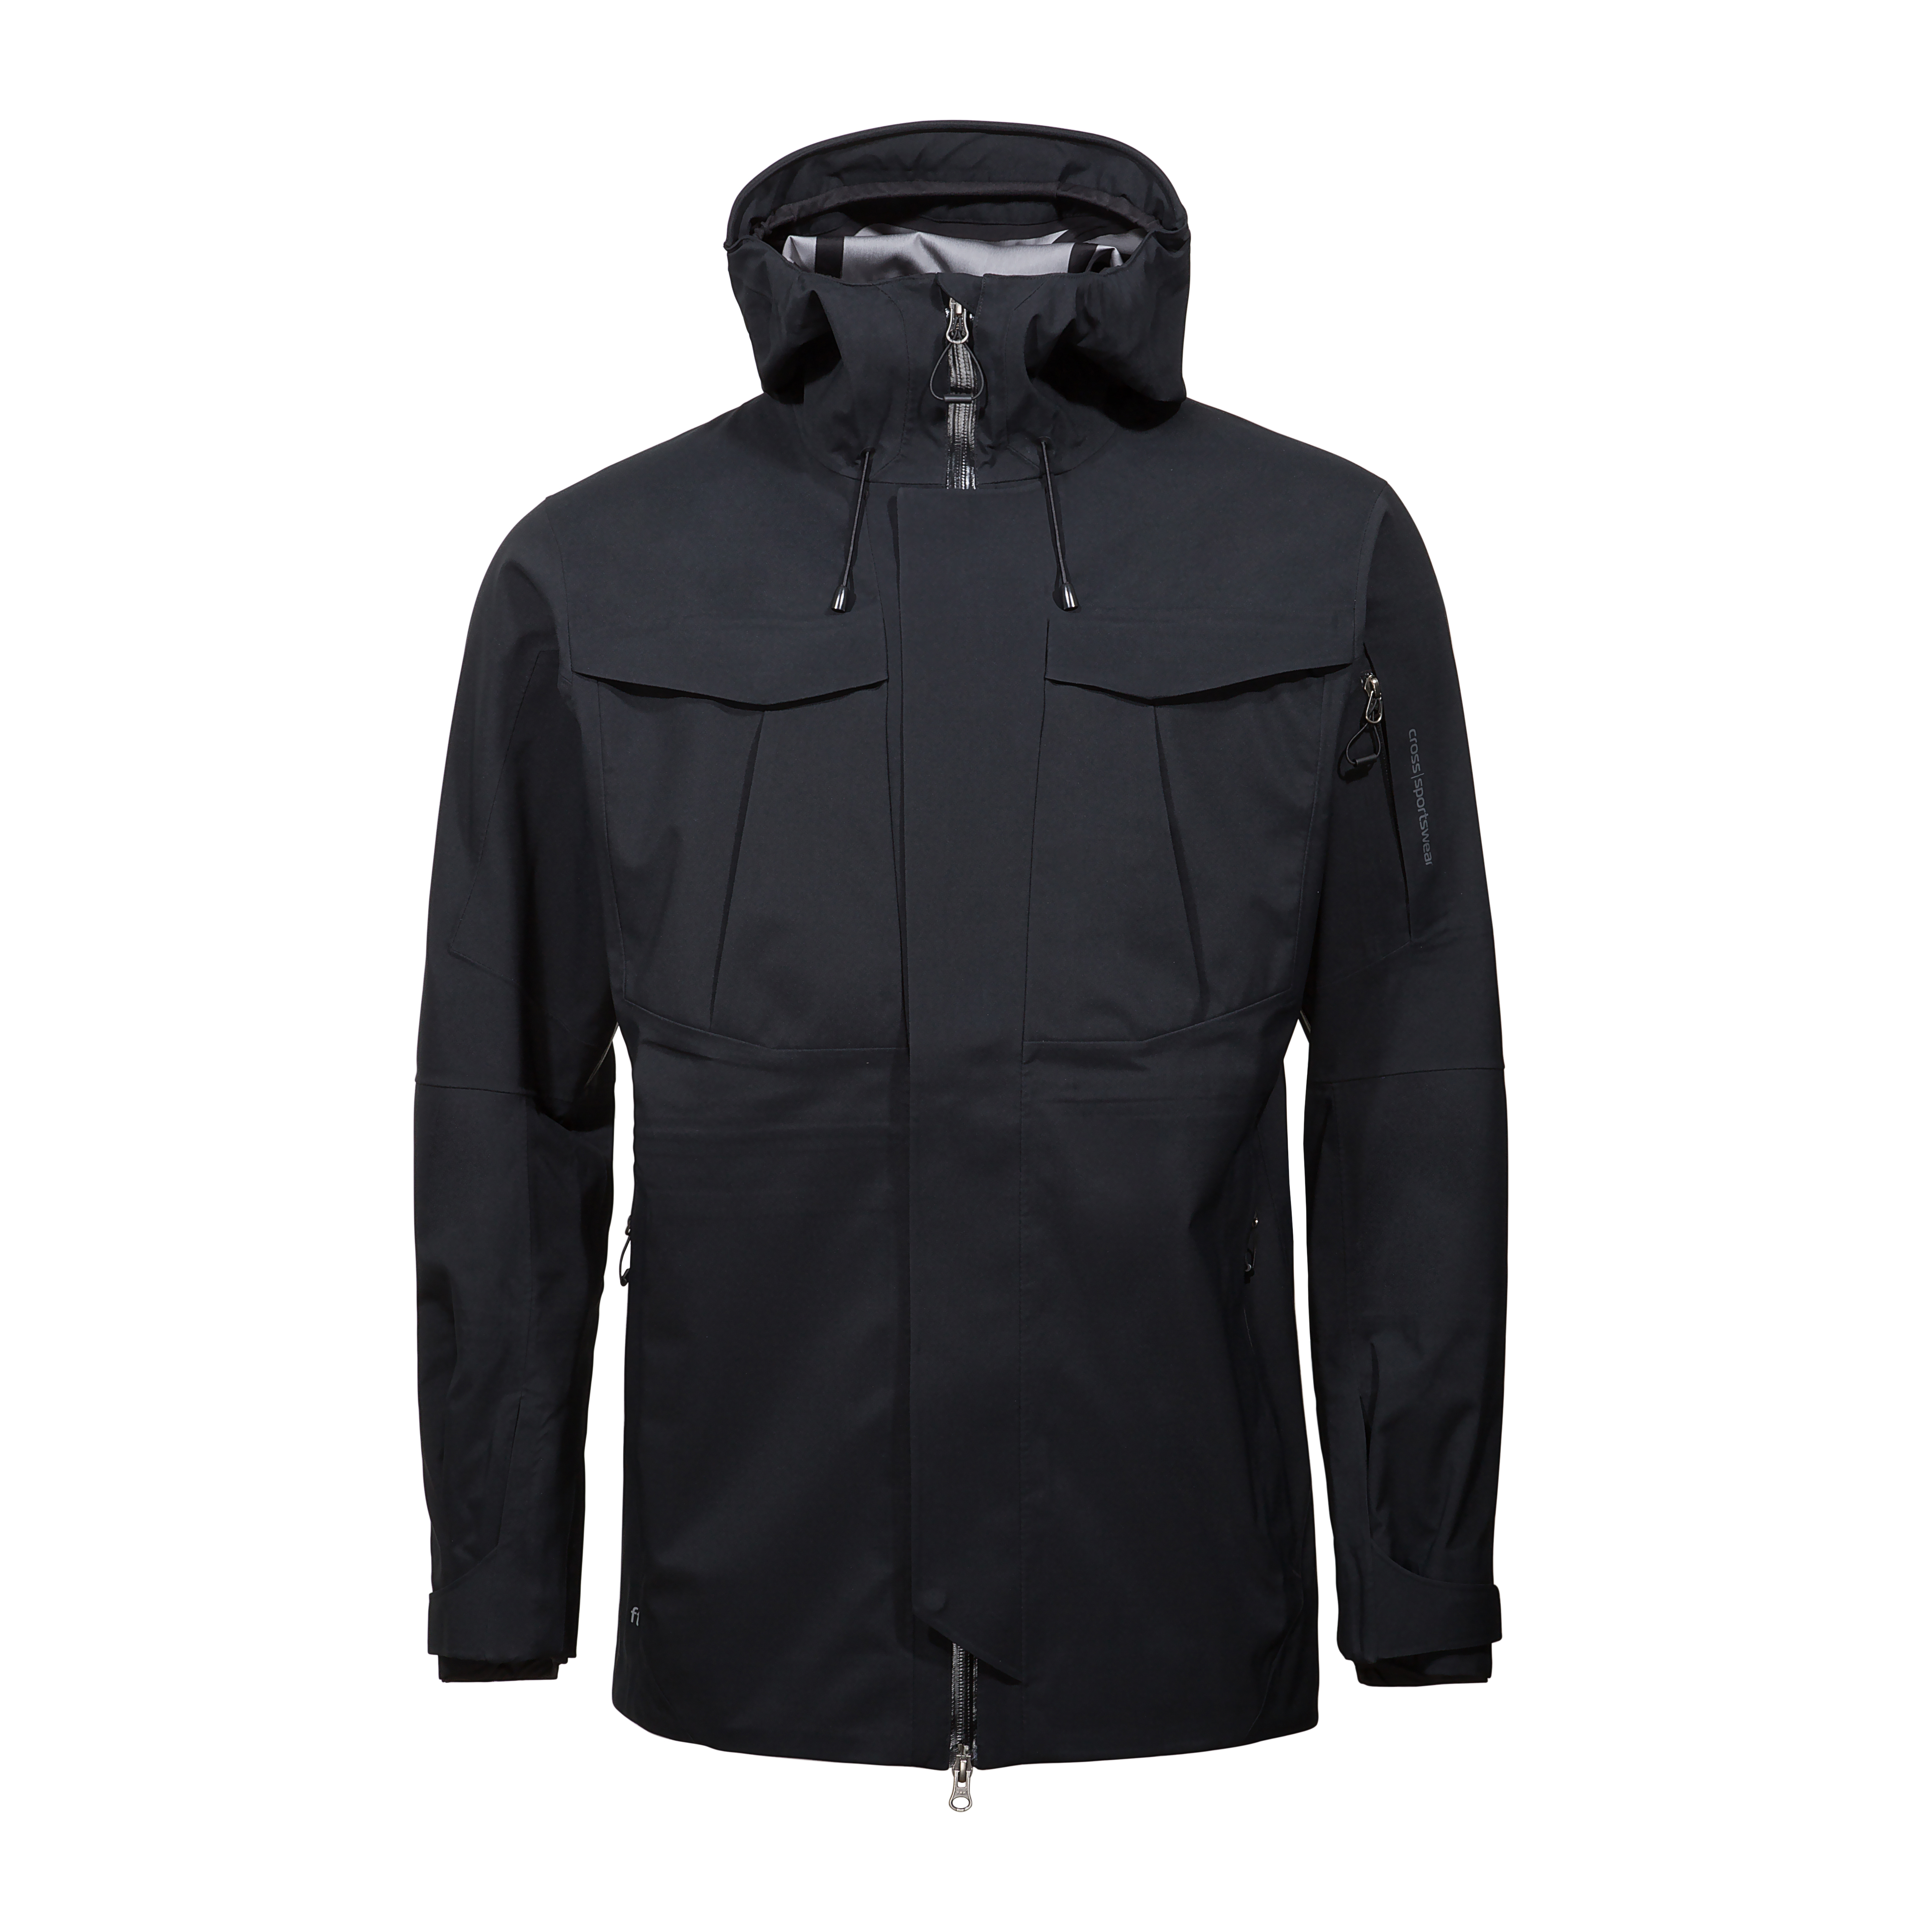 produktfoto-cross-sportswear-m-edge-cargo-jacket-black-front